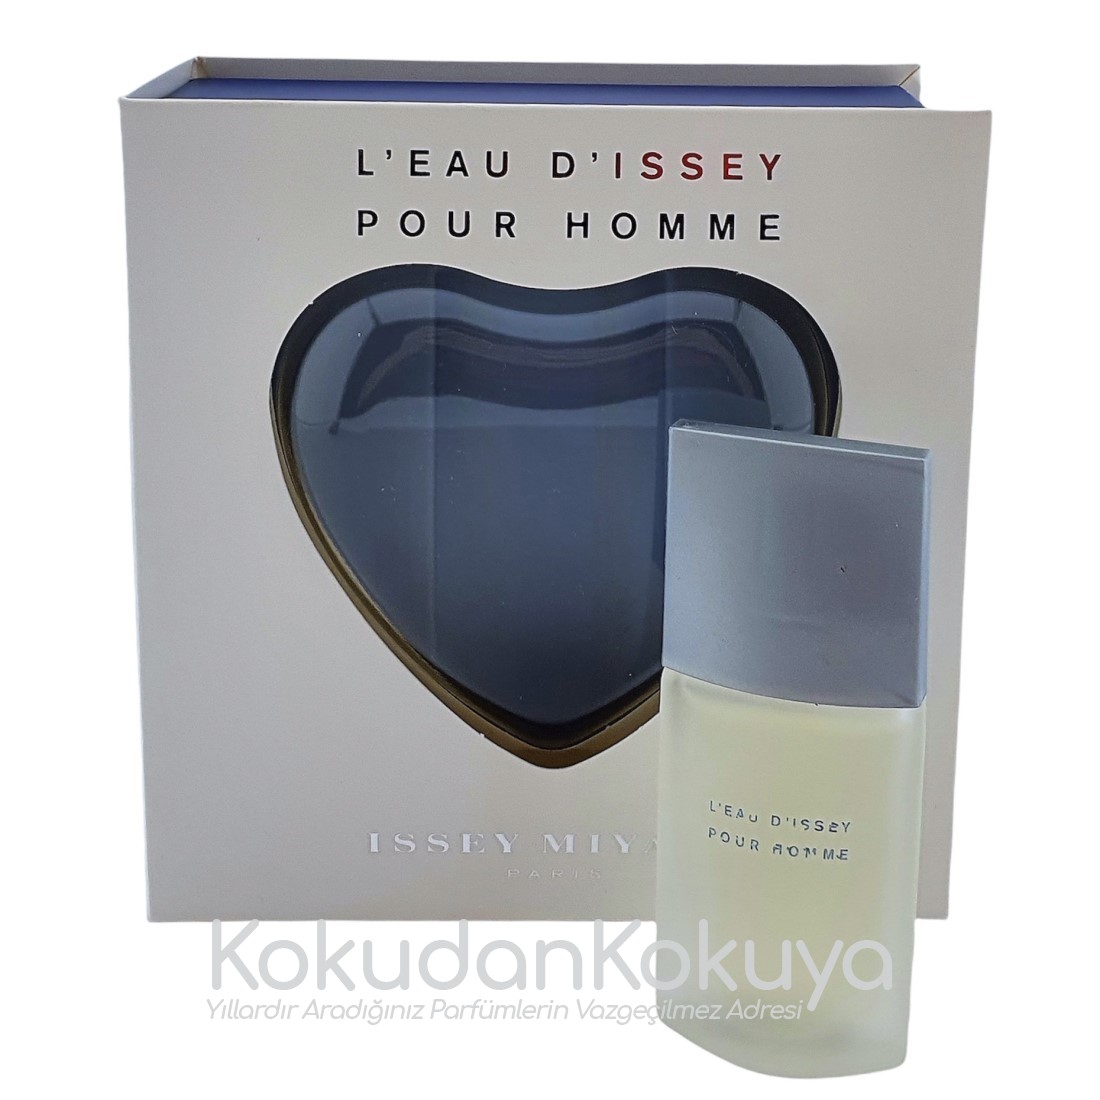 ISSEY MIYAKE L'Eau D'Issey pour Homme (Vintage) Parfüm Erkek 7ml Minyatür (Mini Perfume) Dökme 